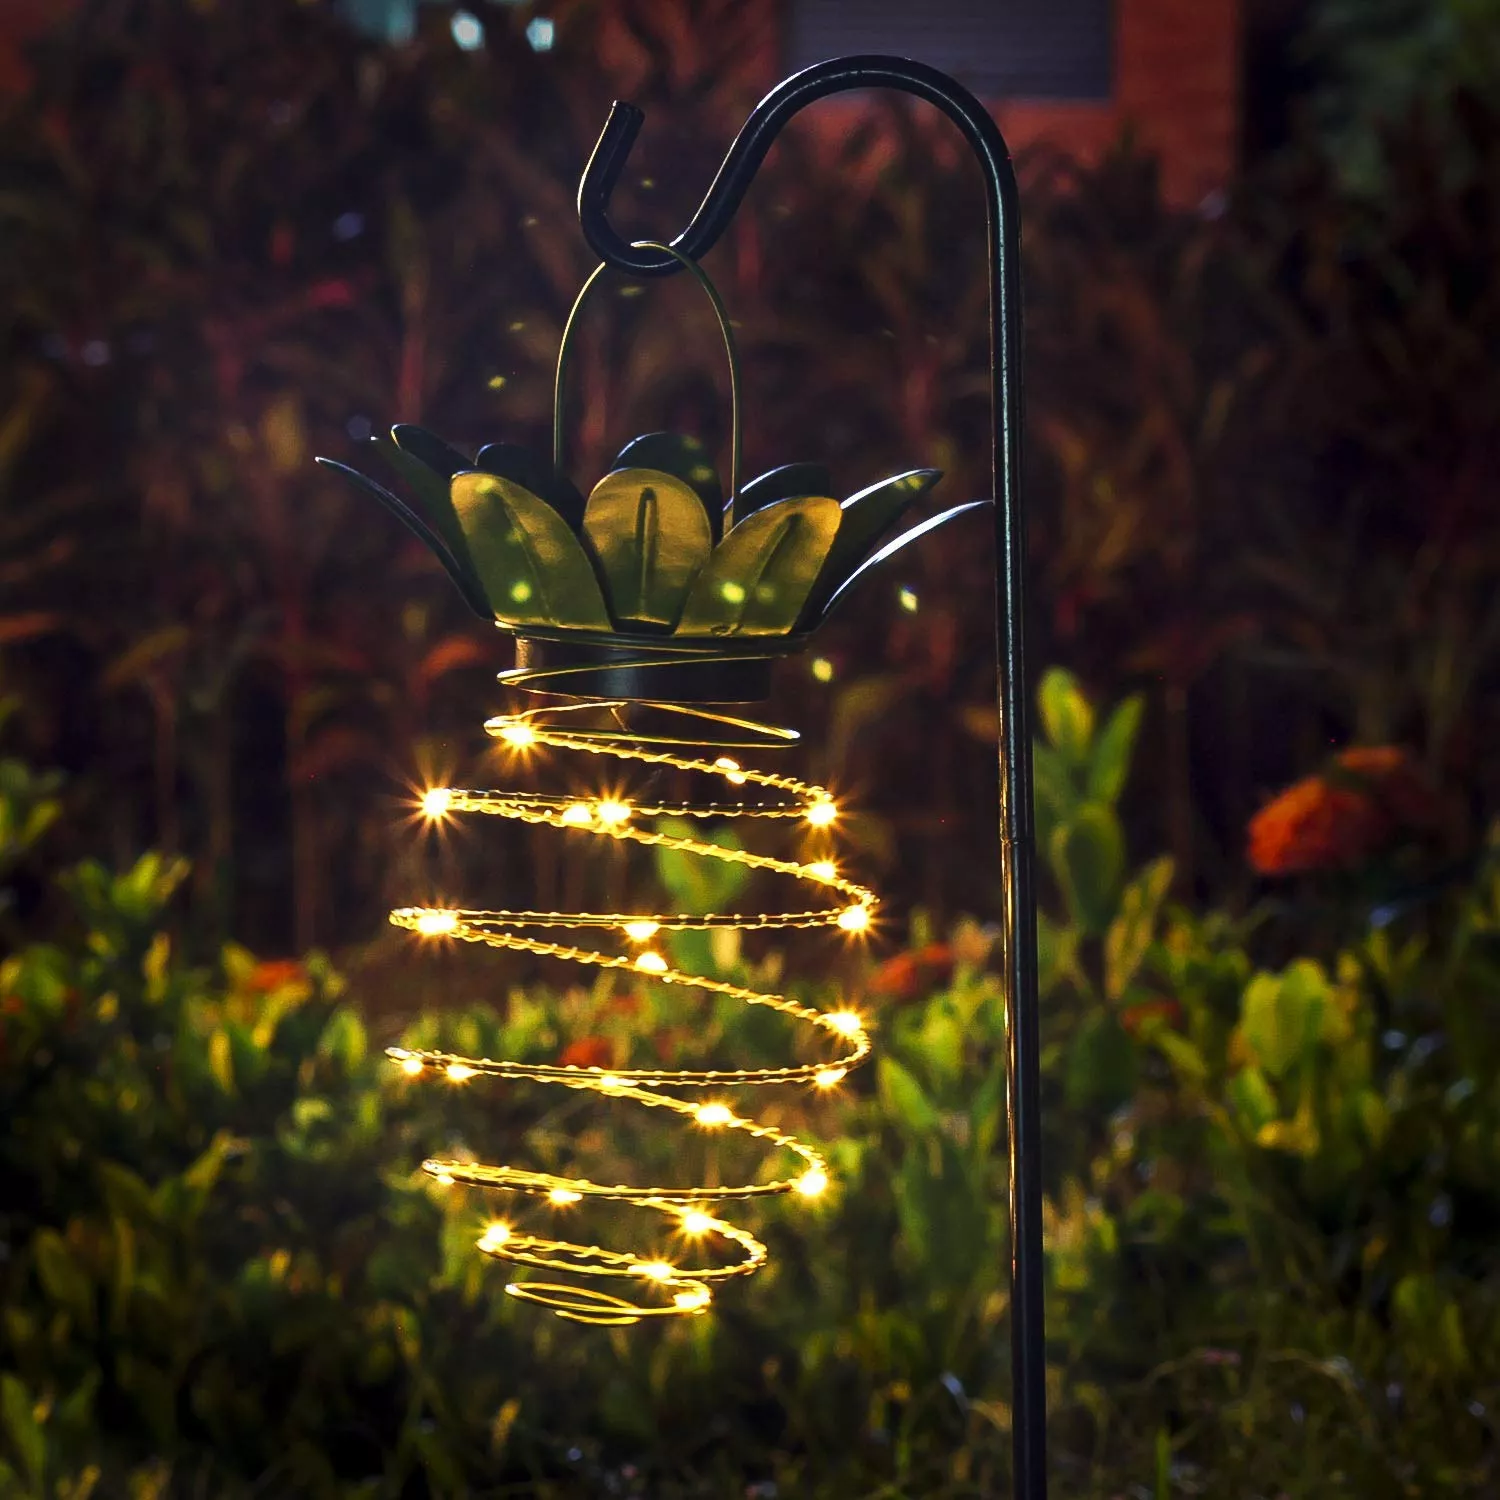 luzes-do-jardim-solar-forma-abacaxi-ao-ar-livre-pendurado-luz-solar-lampada